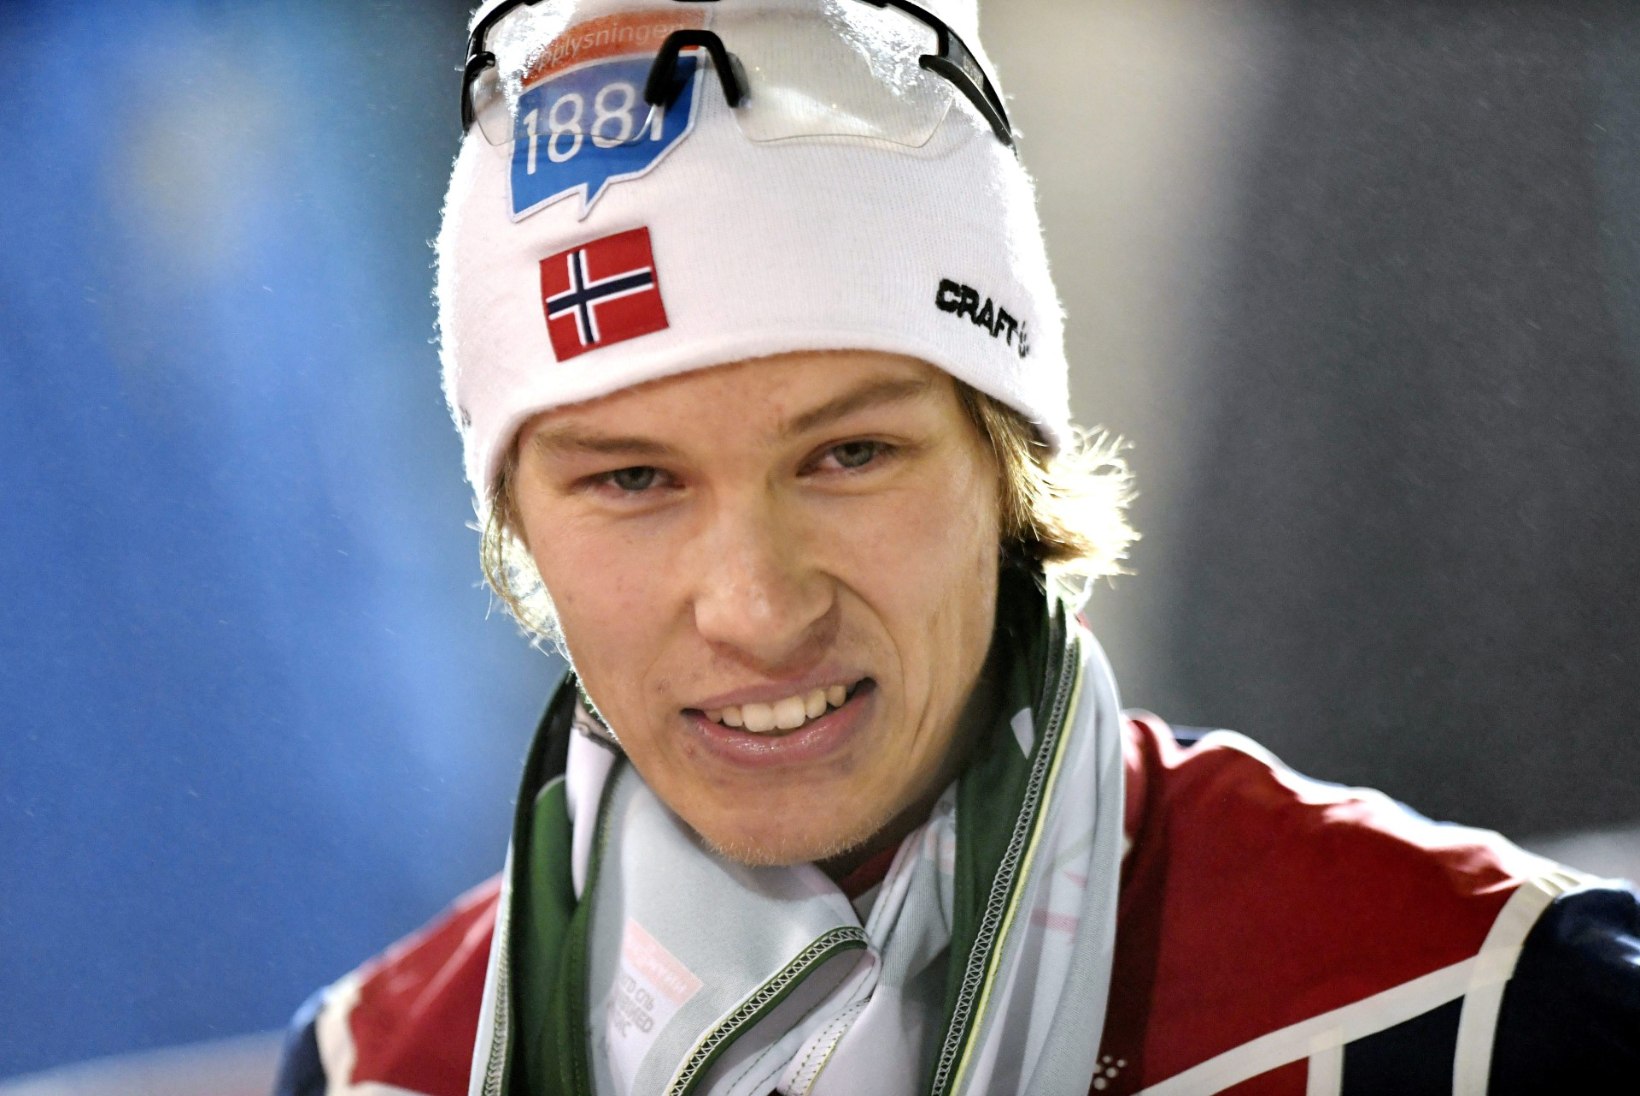 Norralased võtsid Lillehammeris kolmikvõidu, ainsa eestlasena pääses lõppvõistlusele Tiirmaa